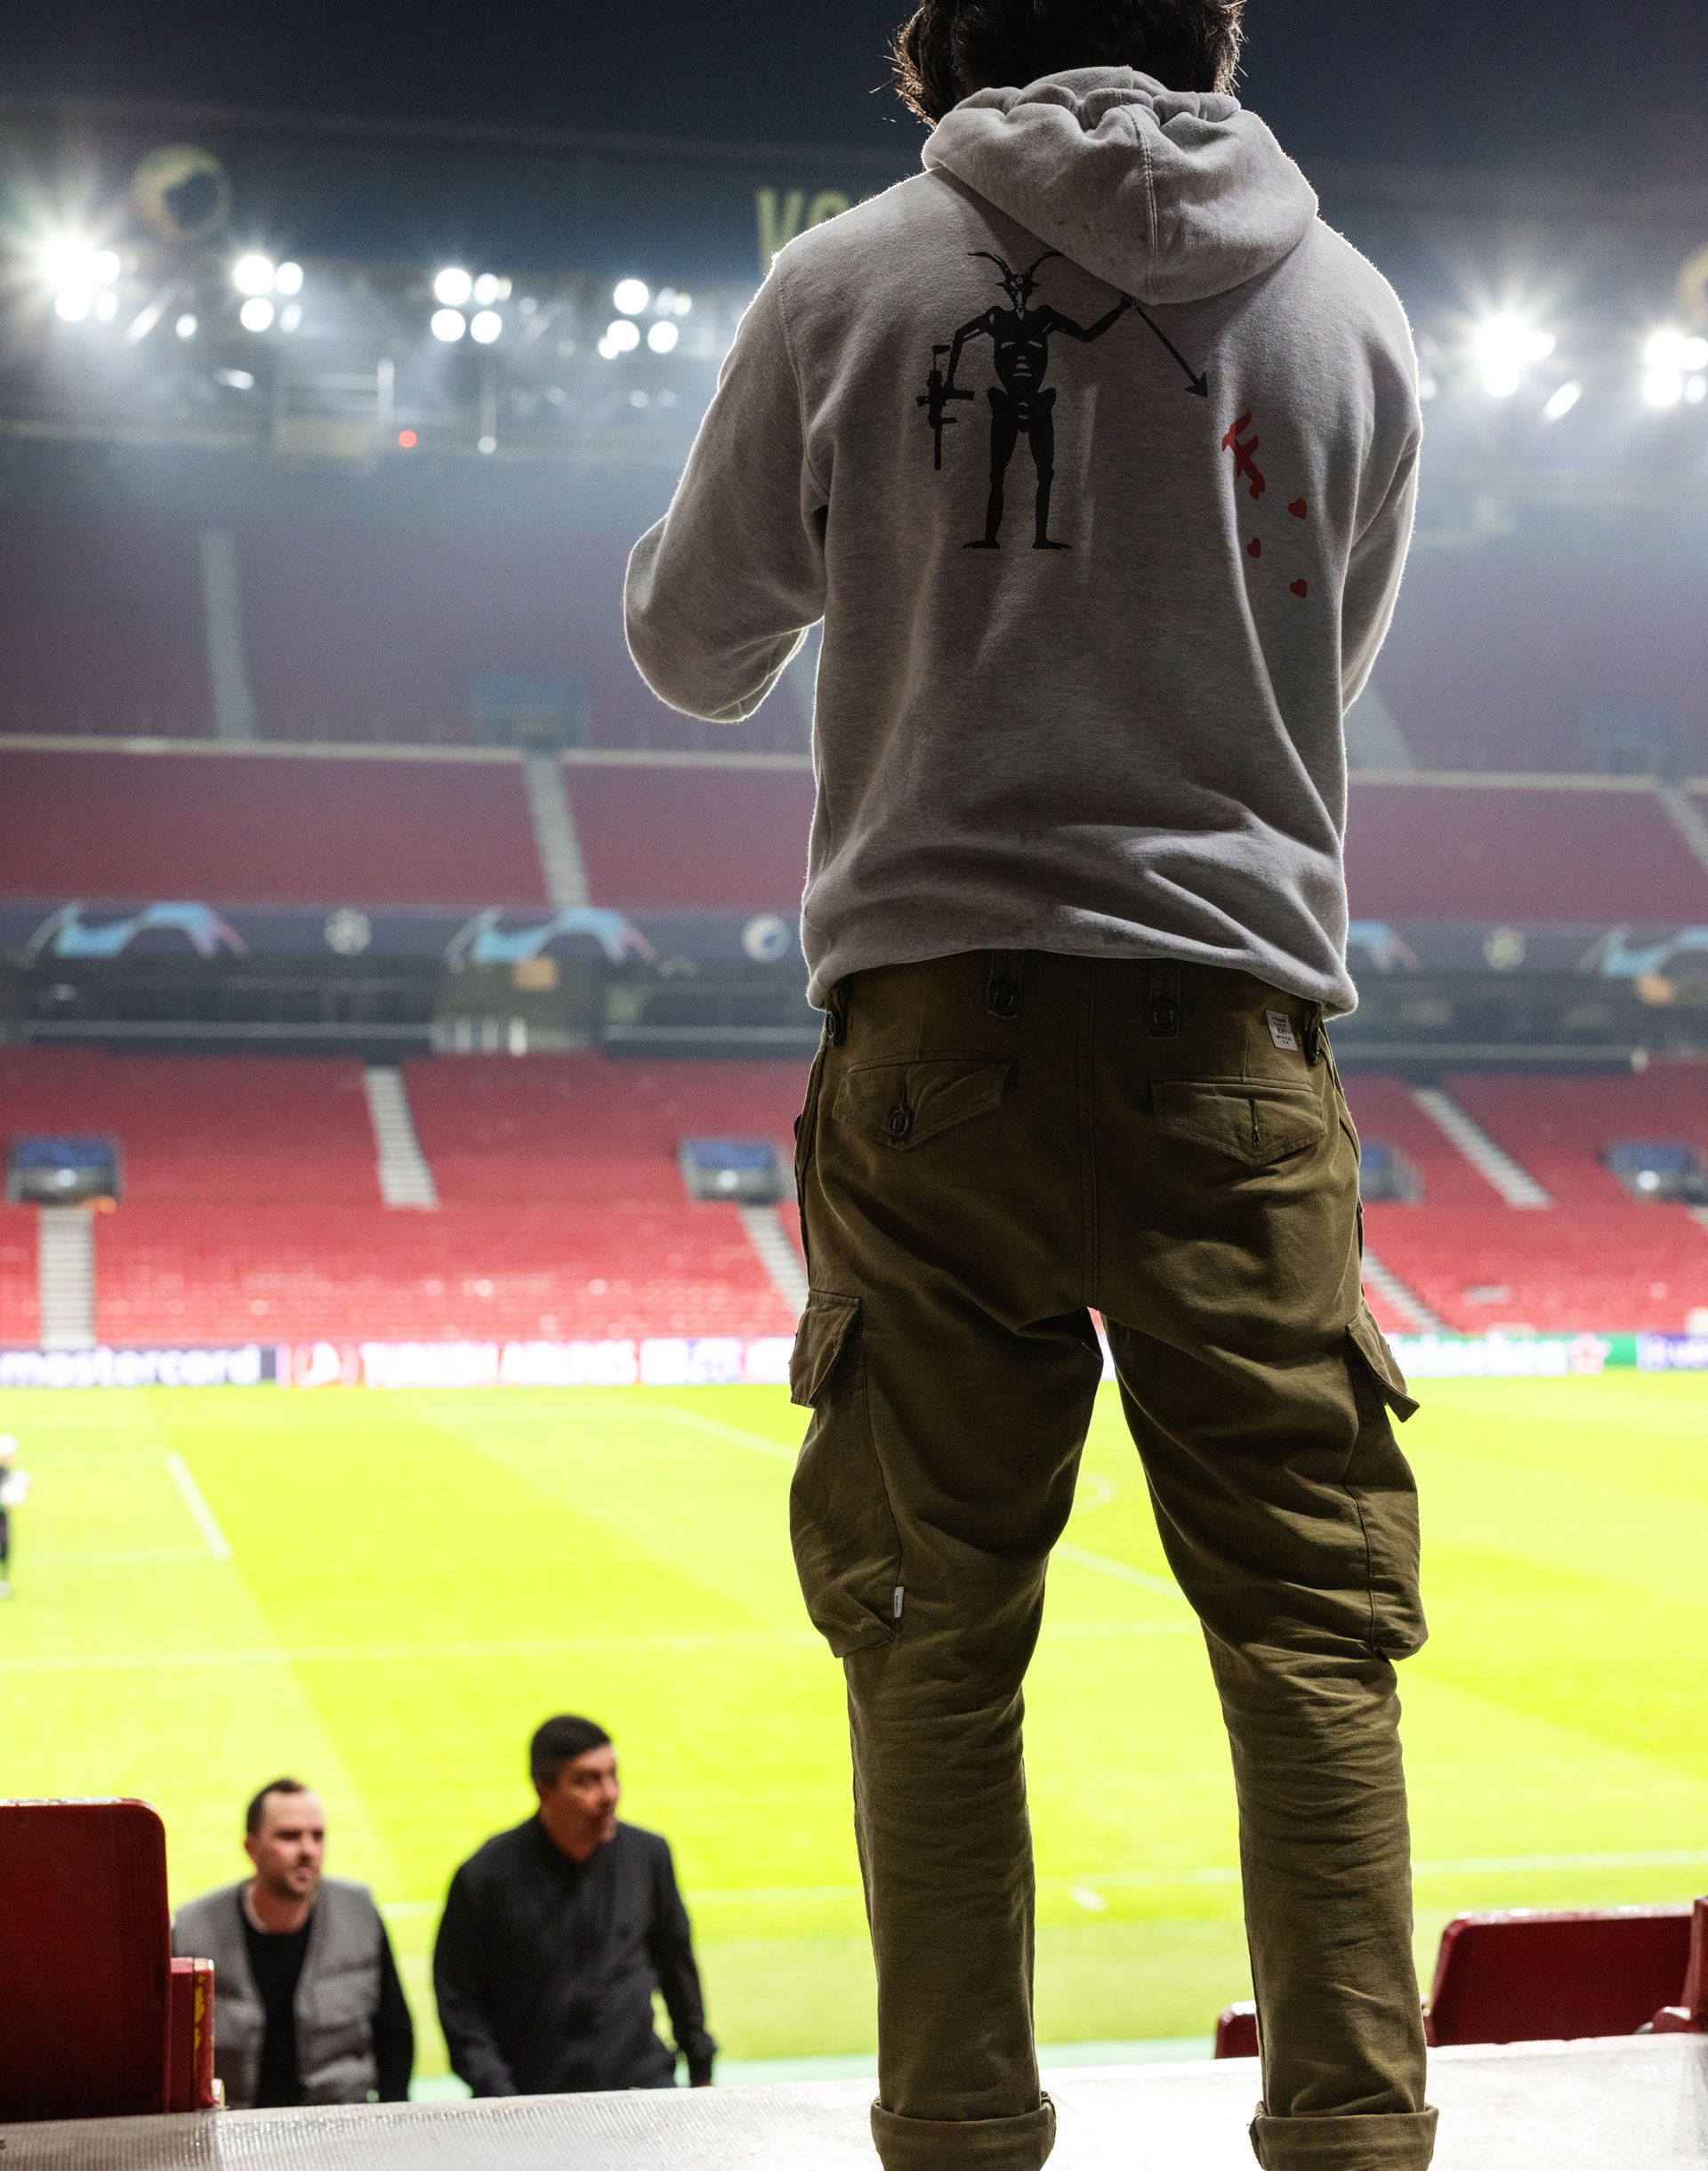 Mann steht in einem Stadion mit dem Rücken zur Kamera und schaut herunter